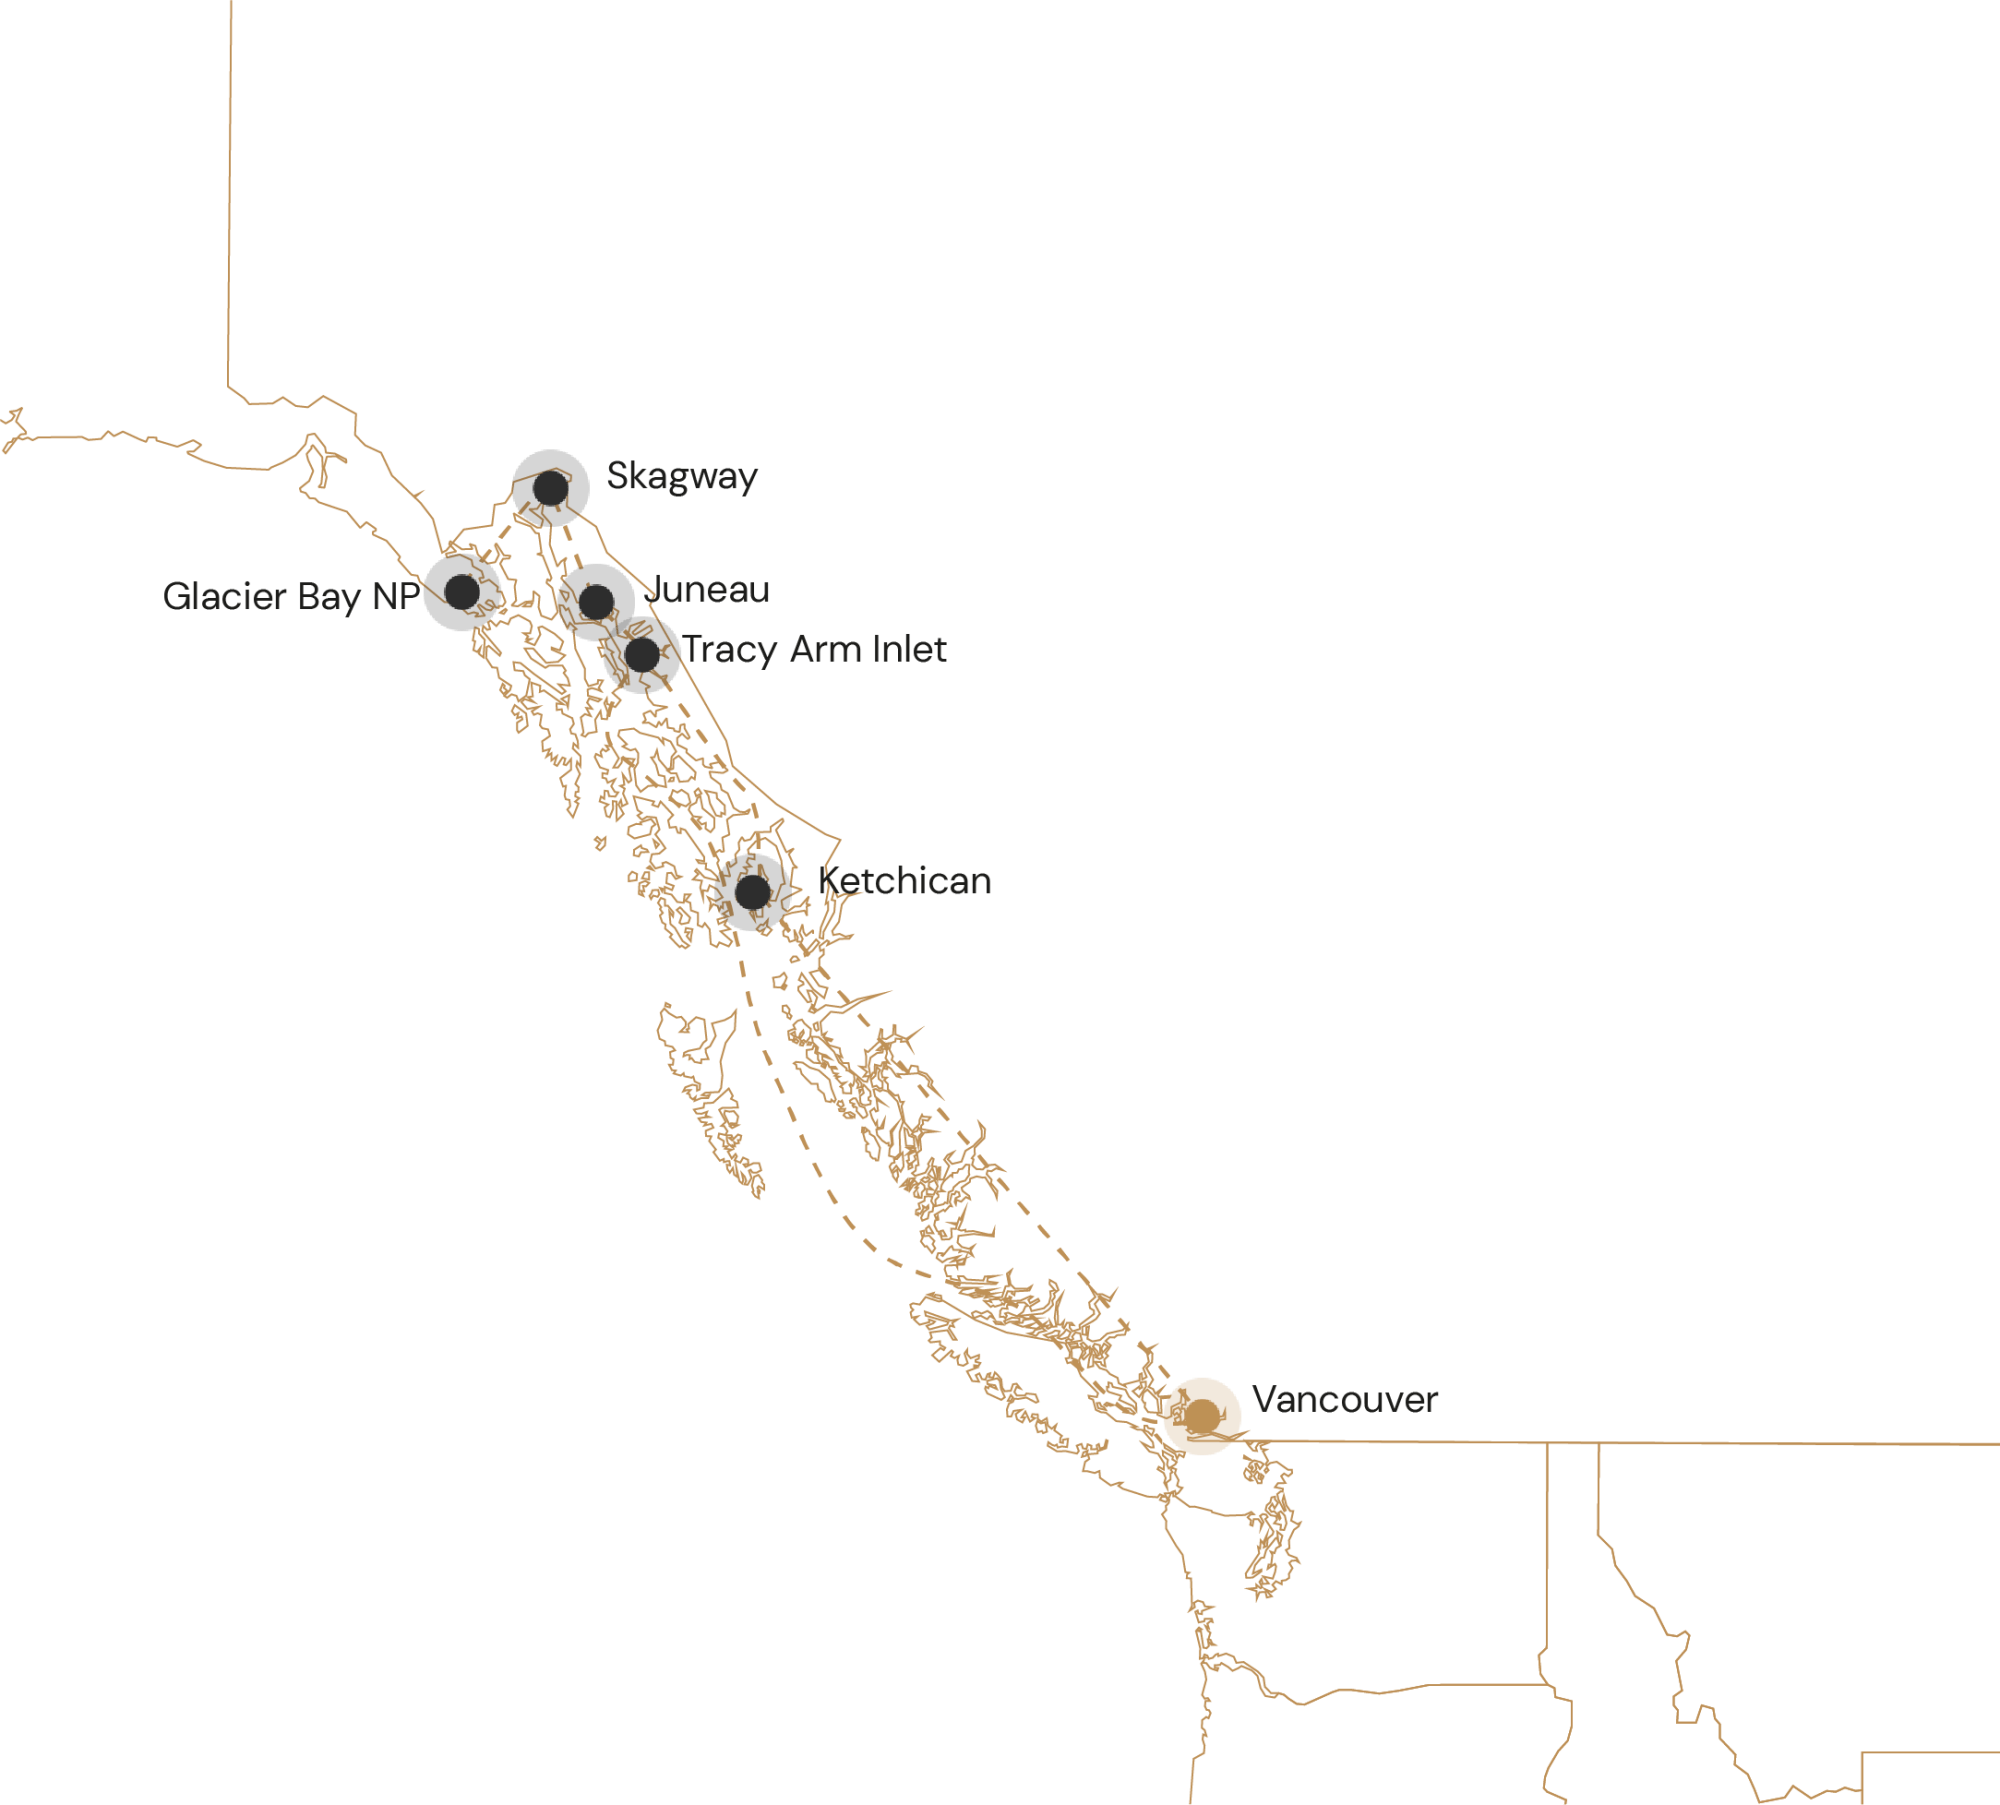 Kaartje cruiseavontuur Canada en Alaska